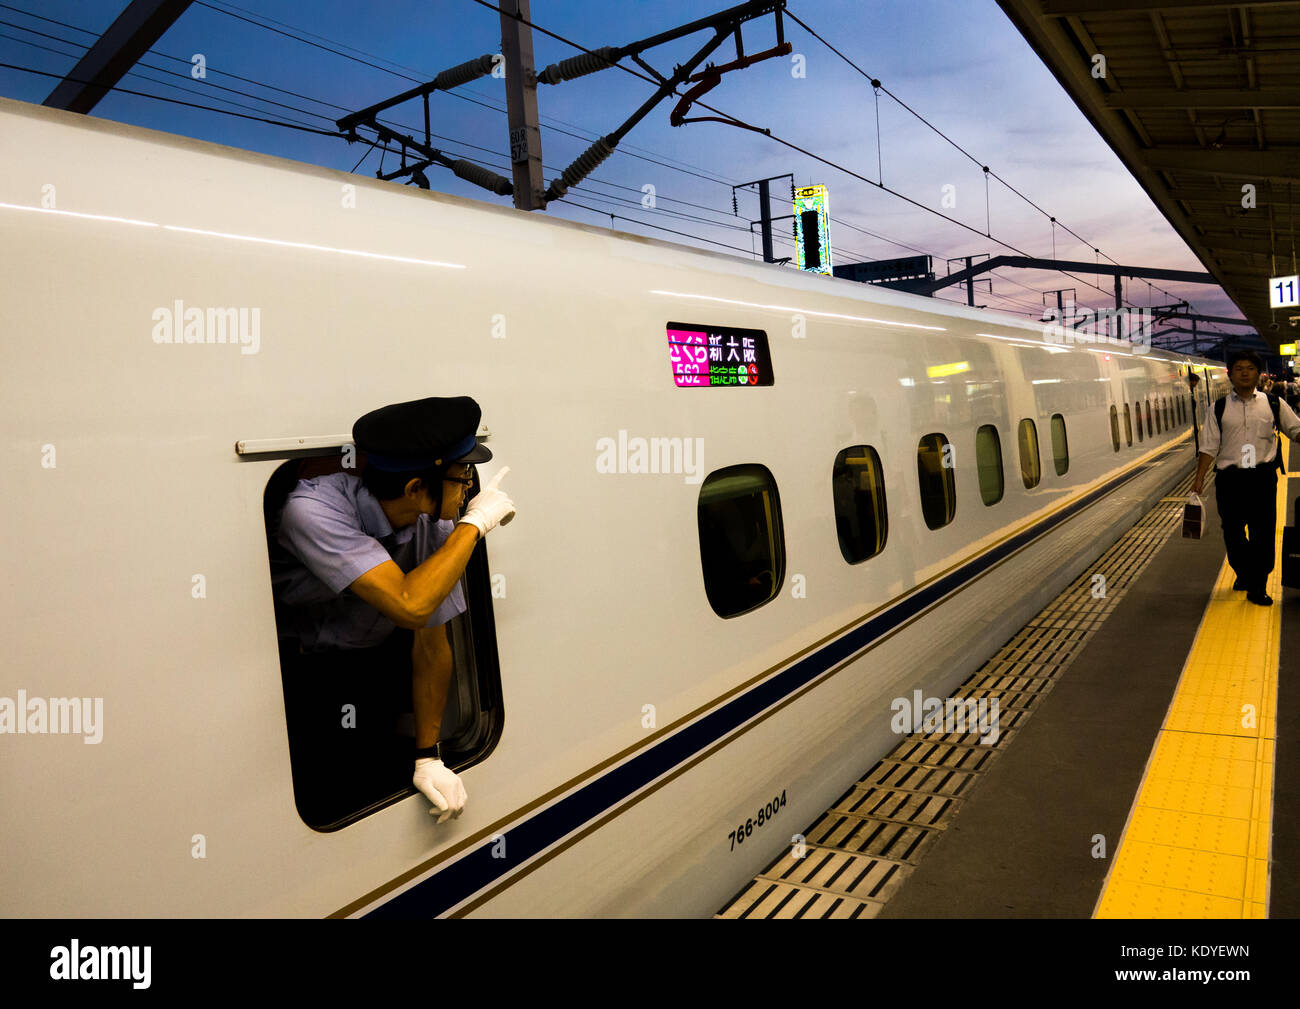 Chef de train par la fenêtre du Shinkansen N700 de Himeji à Osaka-Shi station - Himeji, préfecture de Hyogo, région du Kansai, l'île de Honshu, Japon Banque D'Images